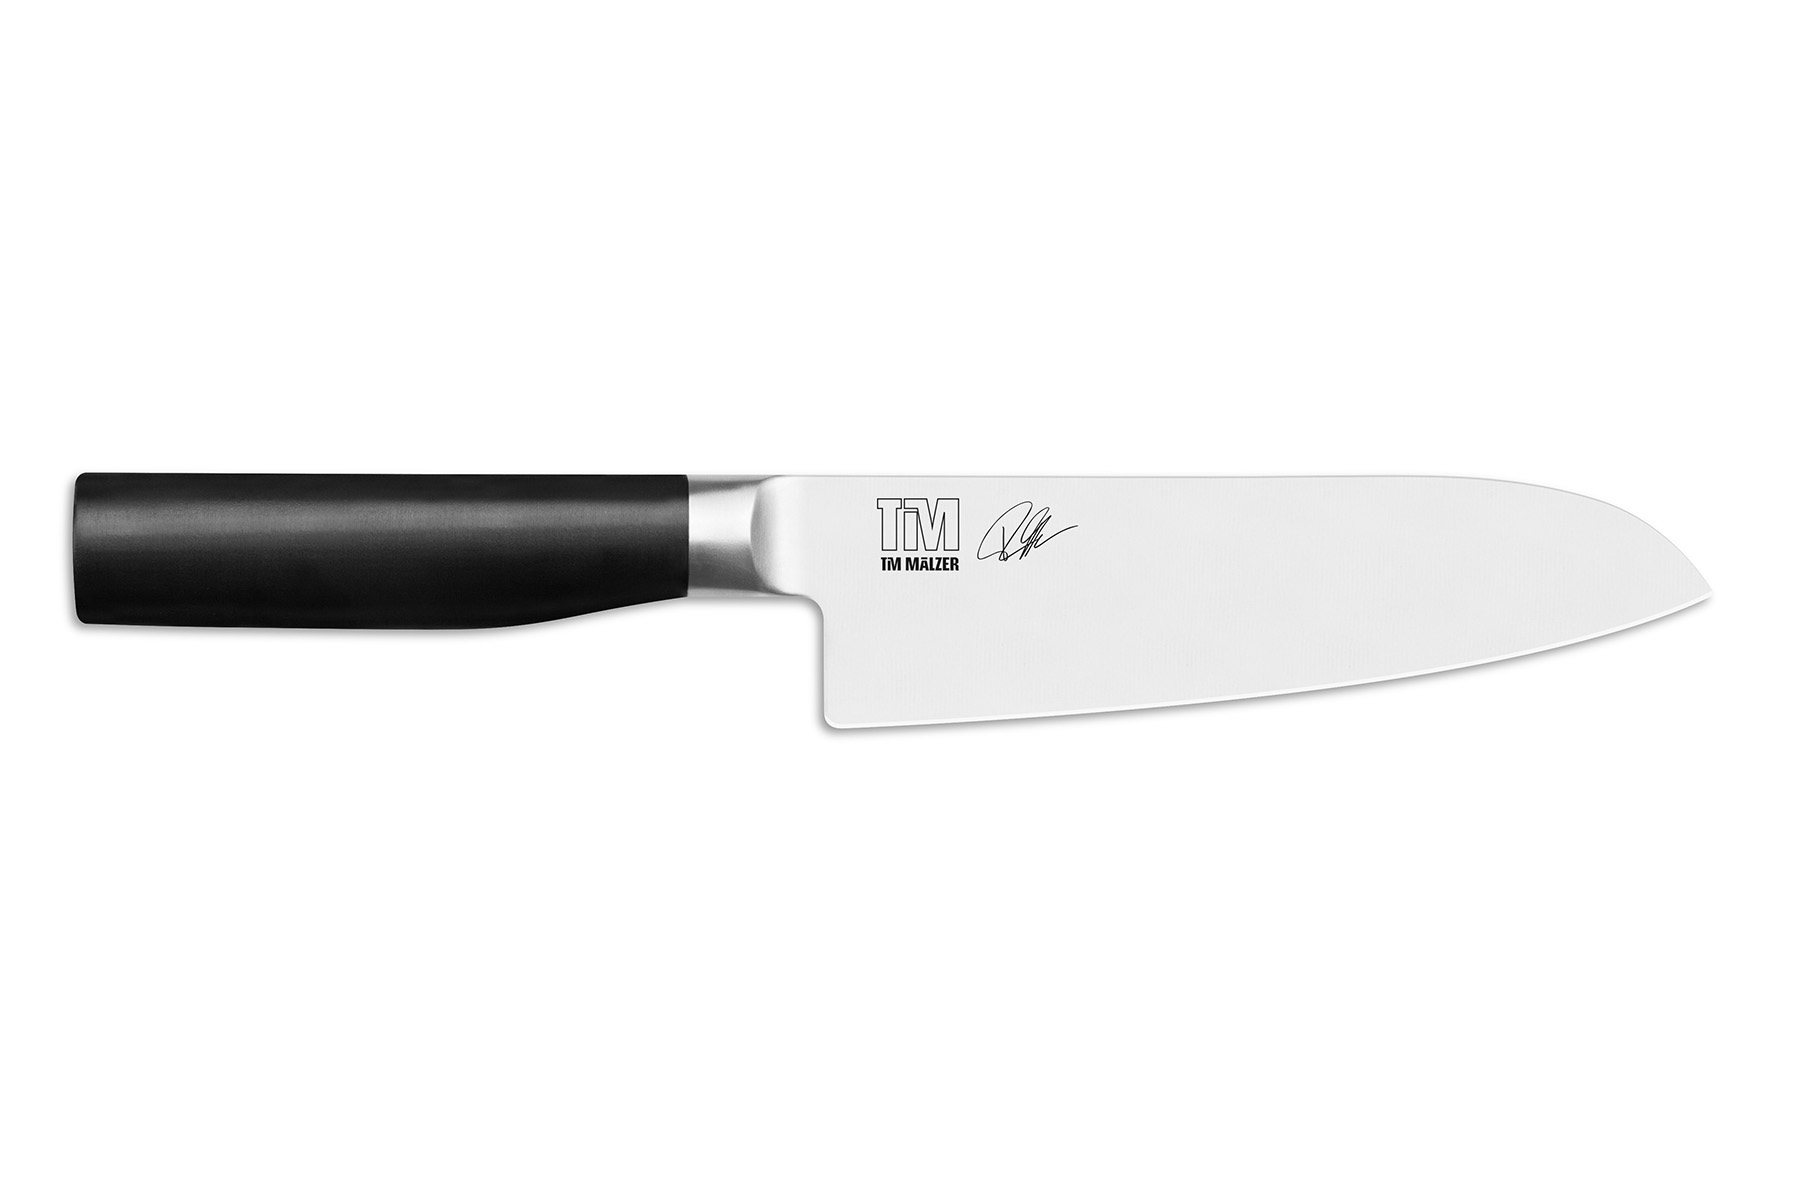 Méthode d'affûtage des couteaux - La coutellerie du Taureau